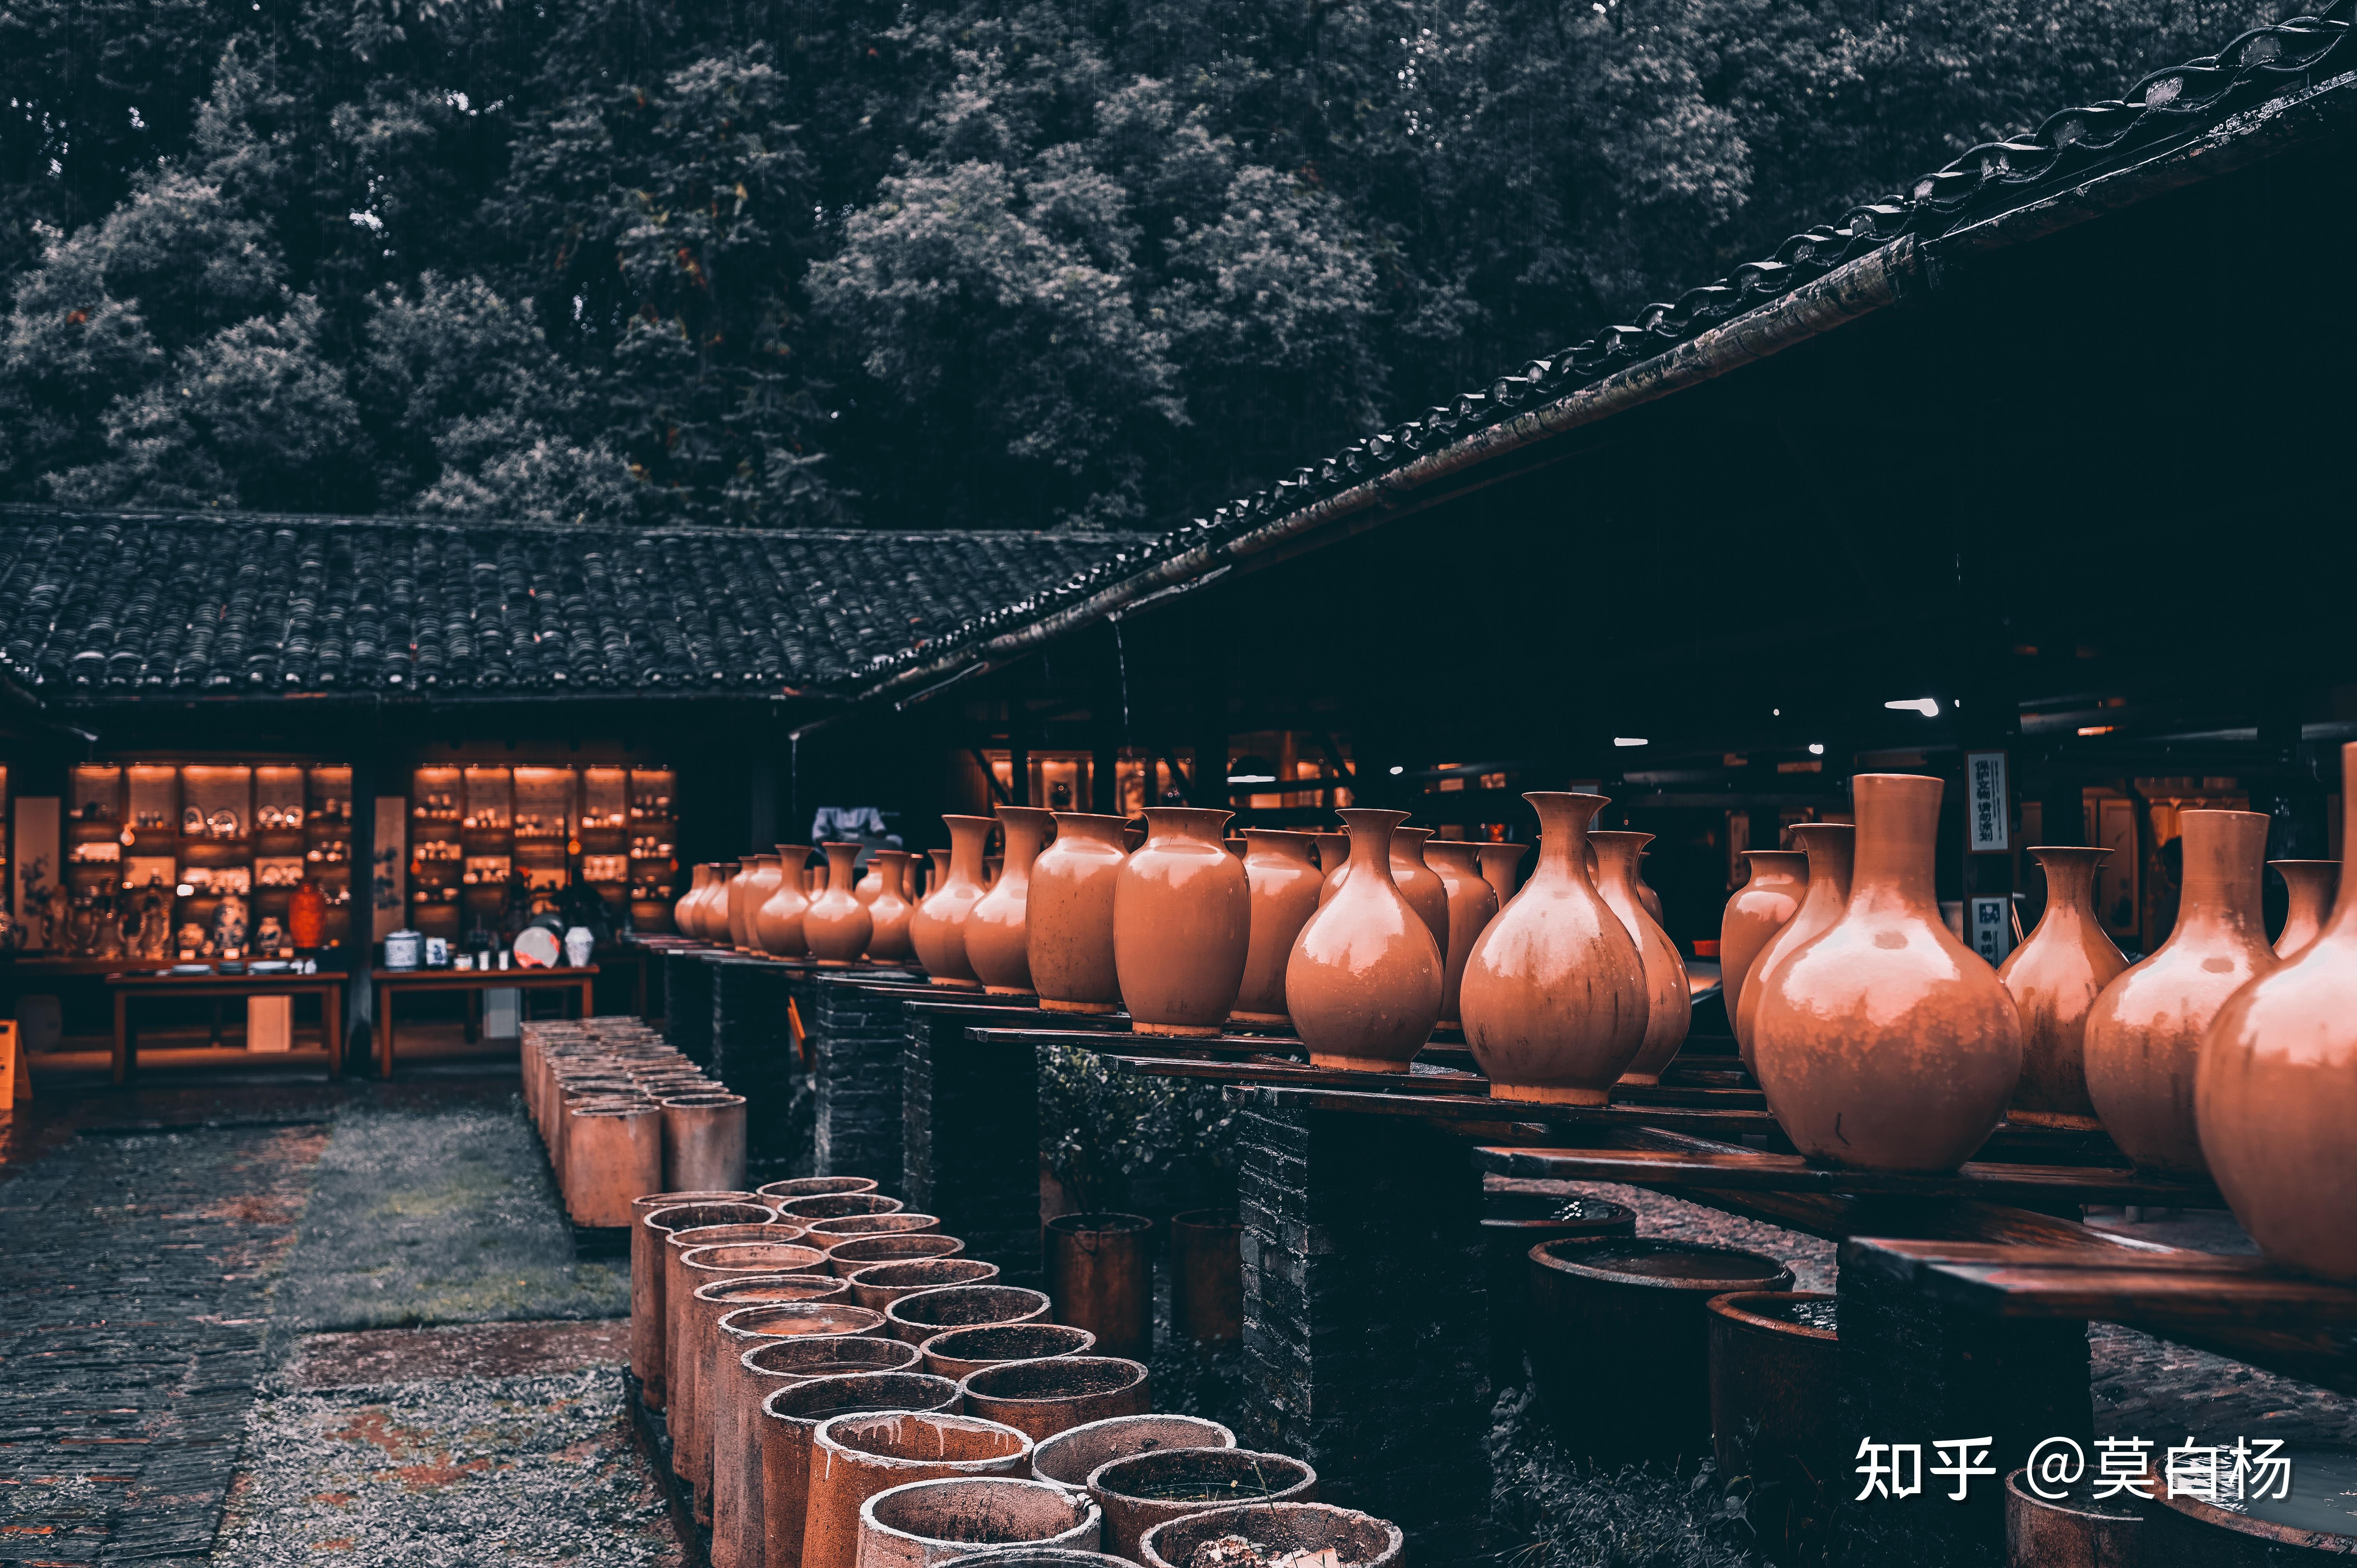 景德镇古窑民俗博览区位于景德镇市昌江区,是全国唯一以陶瓷文化为